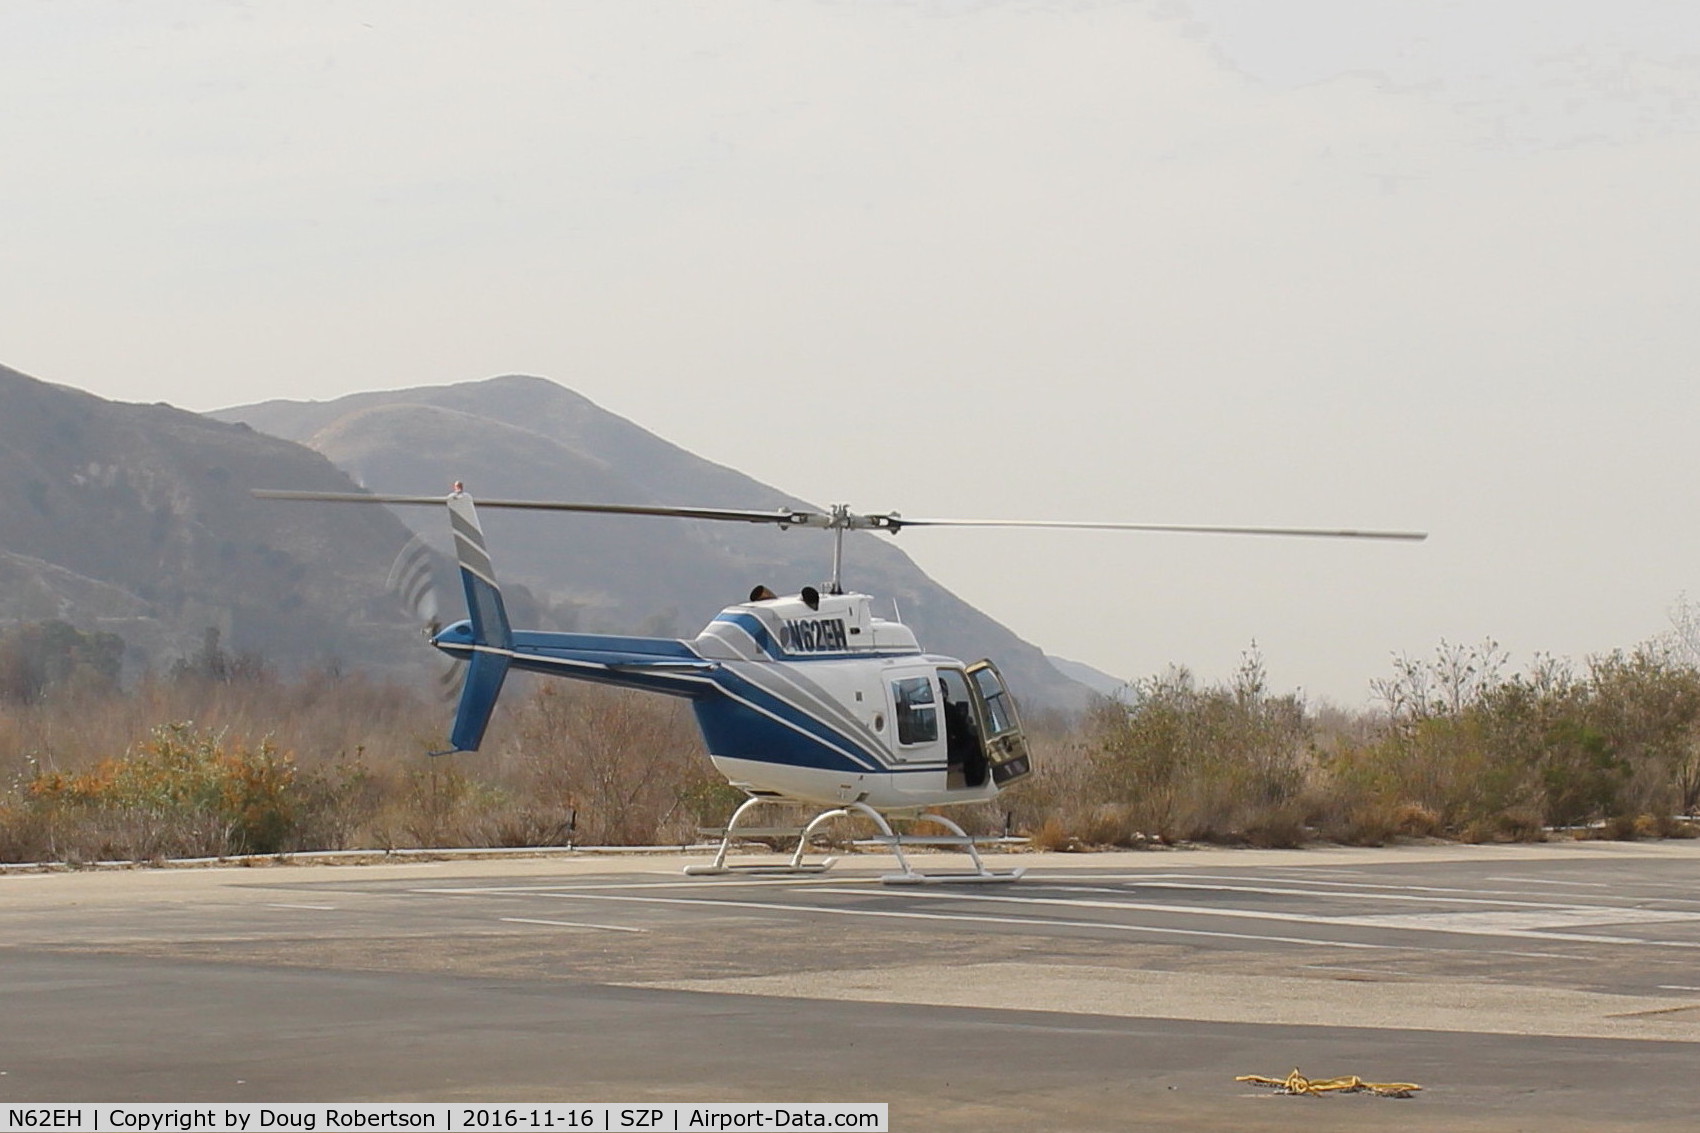 N62EH, 1991 Bell 206B JetRanger II C/N 4191, 1991 Bell 206B JET RANGER II, one Allison 250-C20 Turboshaft 400 shaft Hp, landed on SZP Helipad from L70